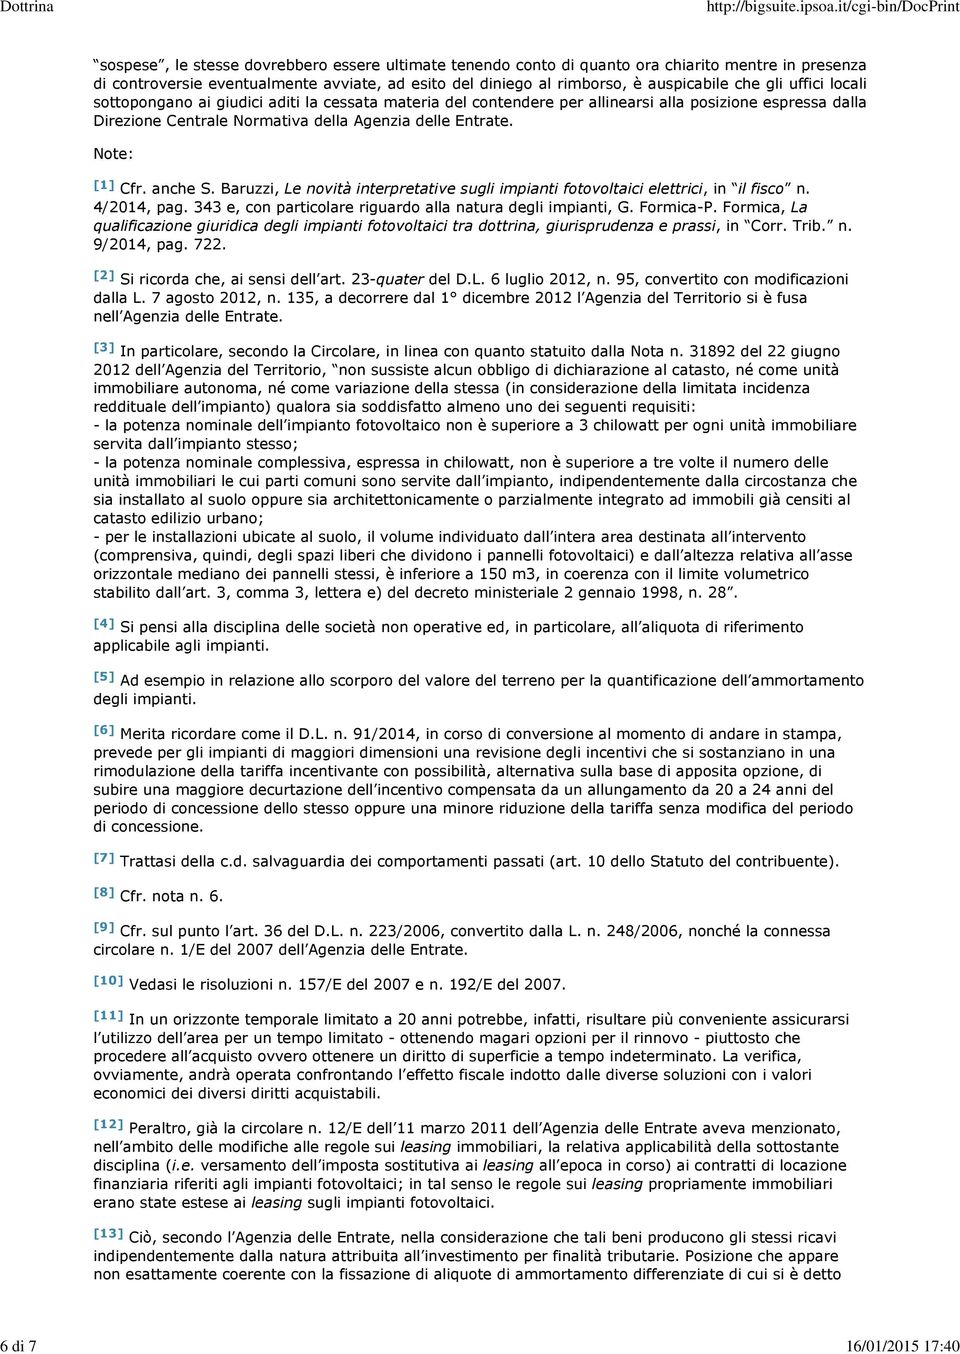 Entrate. Note: [1] Cfr. anche S. Baruzzi, Le novità interpretative sugli impianti fotovoltaici elettrici, in il fisco n. 4/2014, pag. 343 e, con particolare riguardo alla natura degli impianti, G.